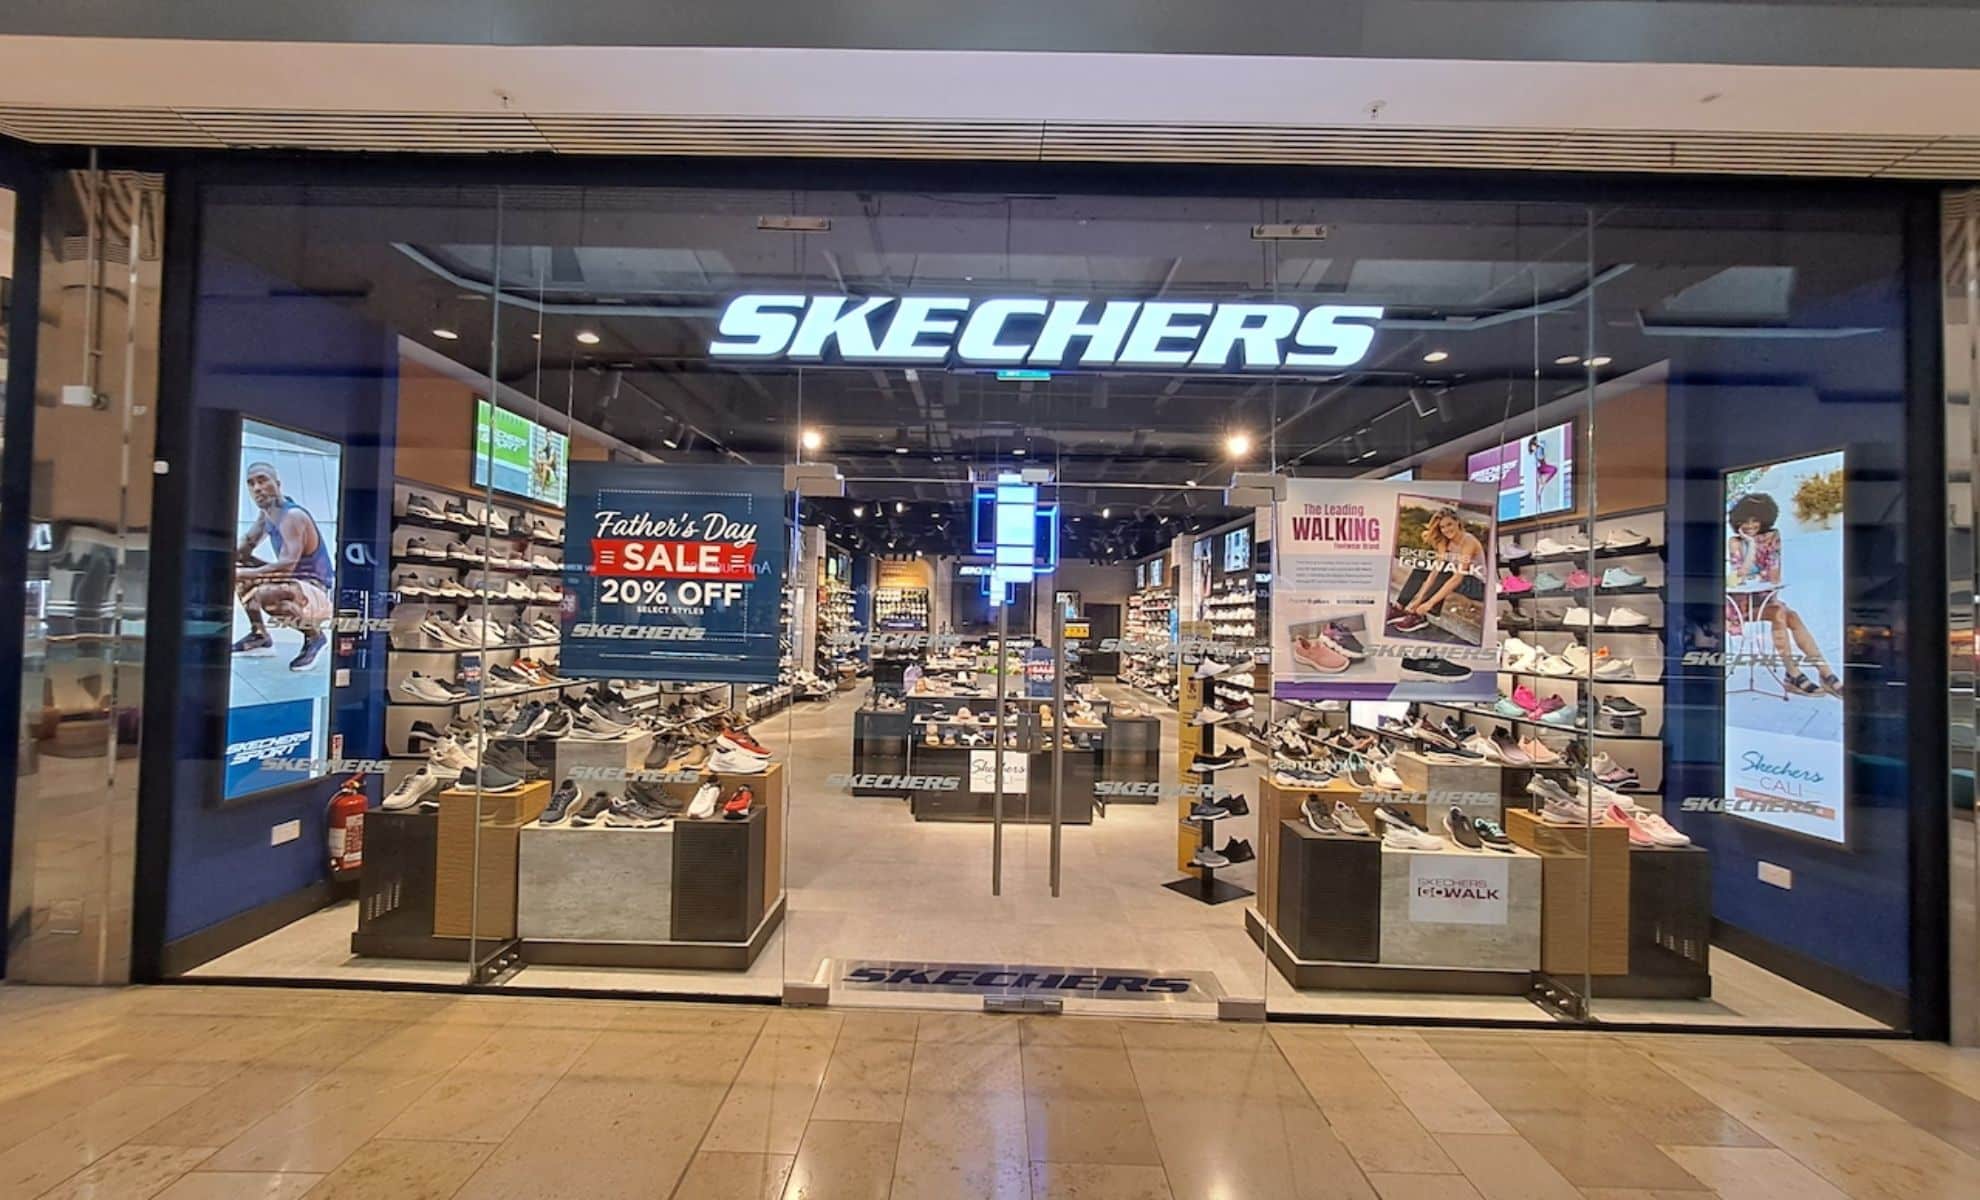 Il Segreto Di Skechers La Combinazione Perfetta Di Stile, Comfort E Tecnologia